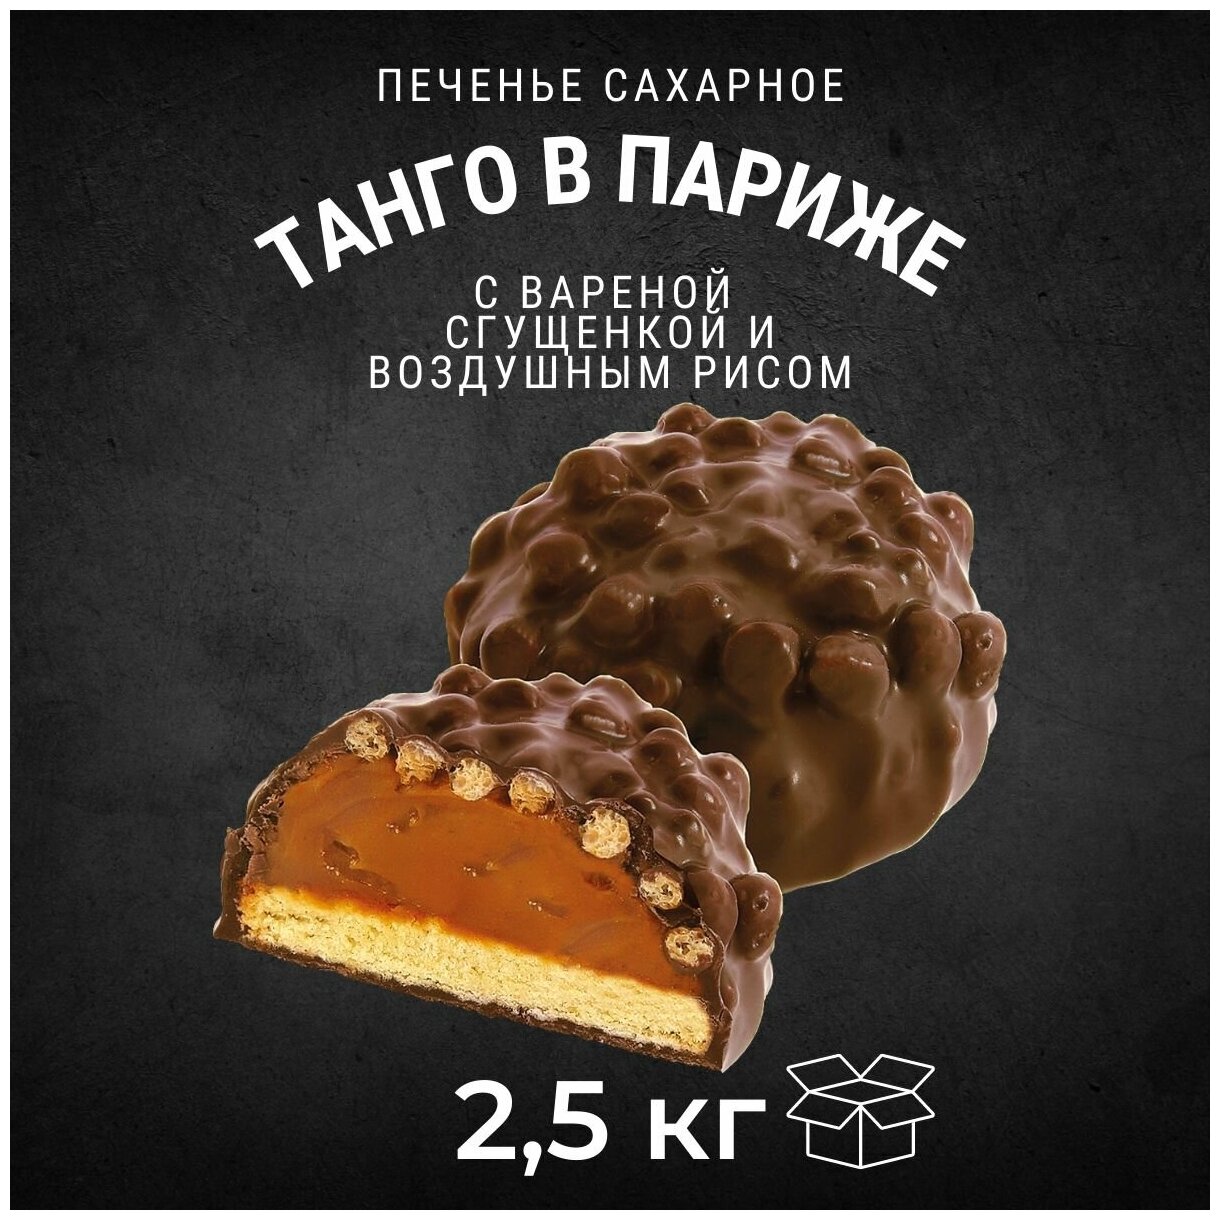 Печенье сахарное танго В париже с вареной сгущенкой 2,5 кг / Черногорский - фотография № 1